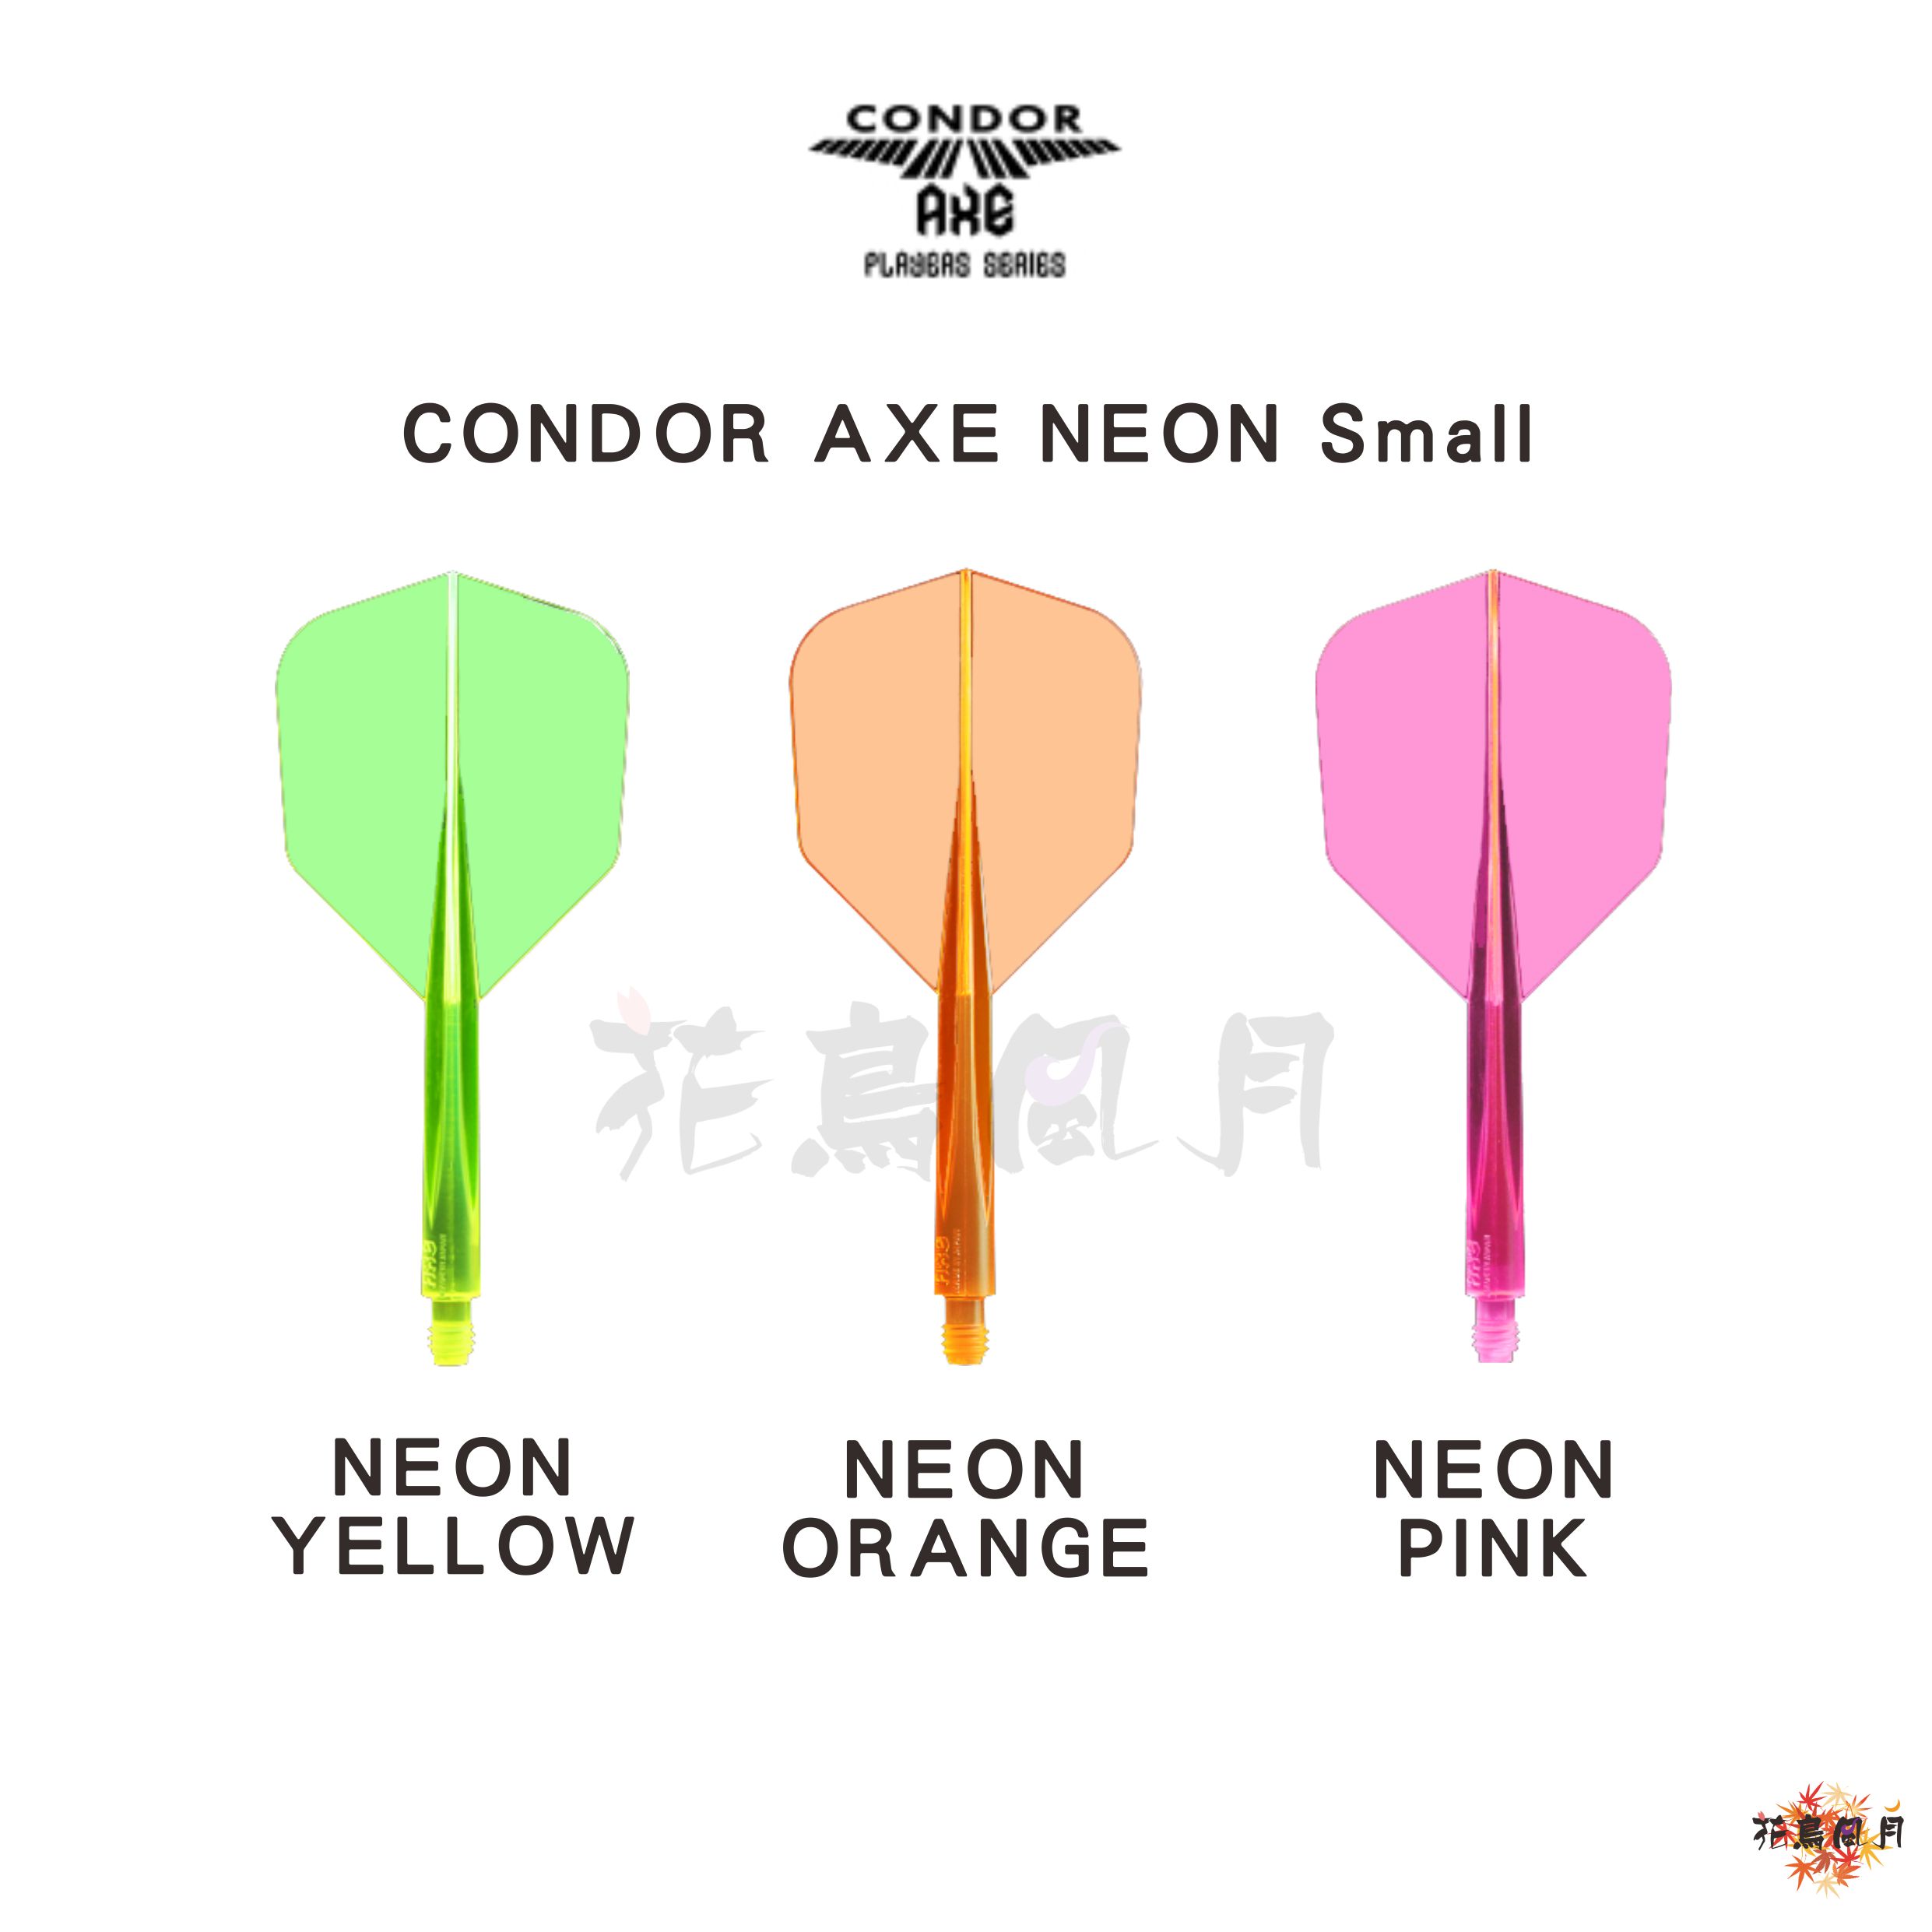 CONDOR-AXE-NEON-Small.jpg